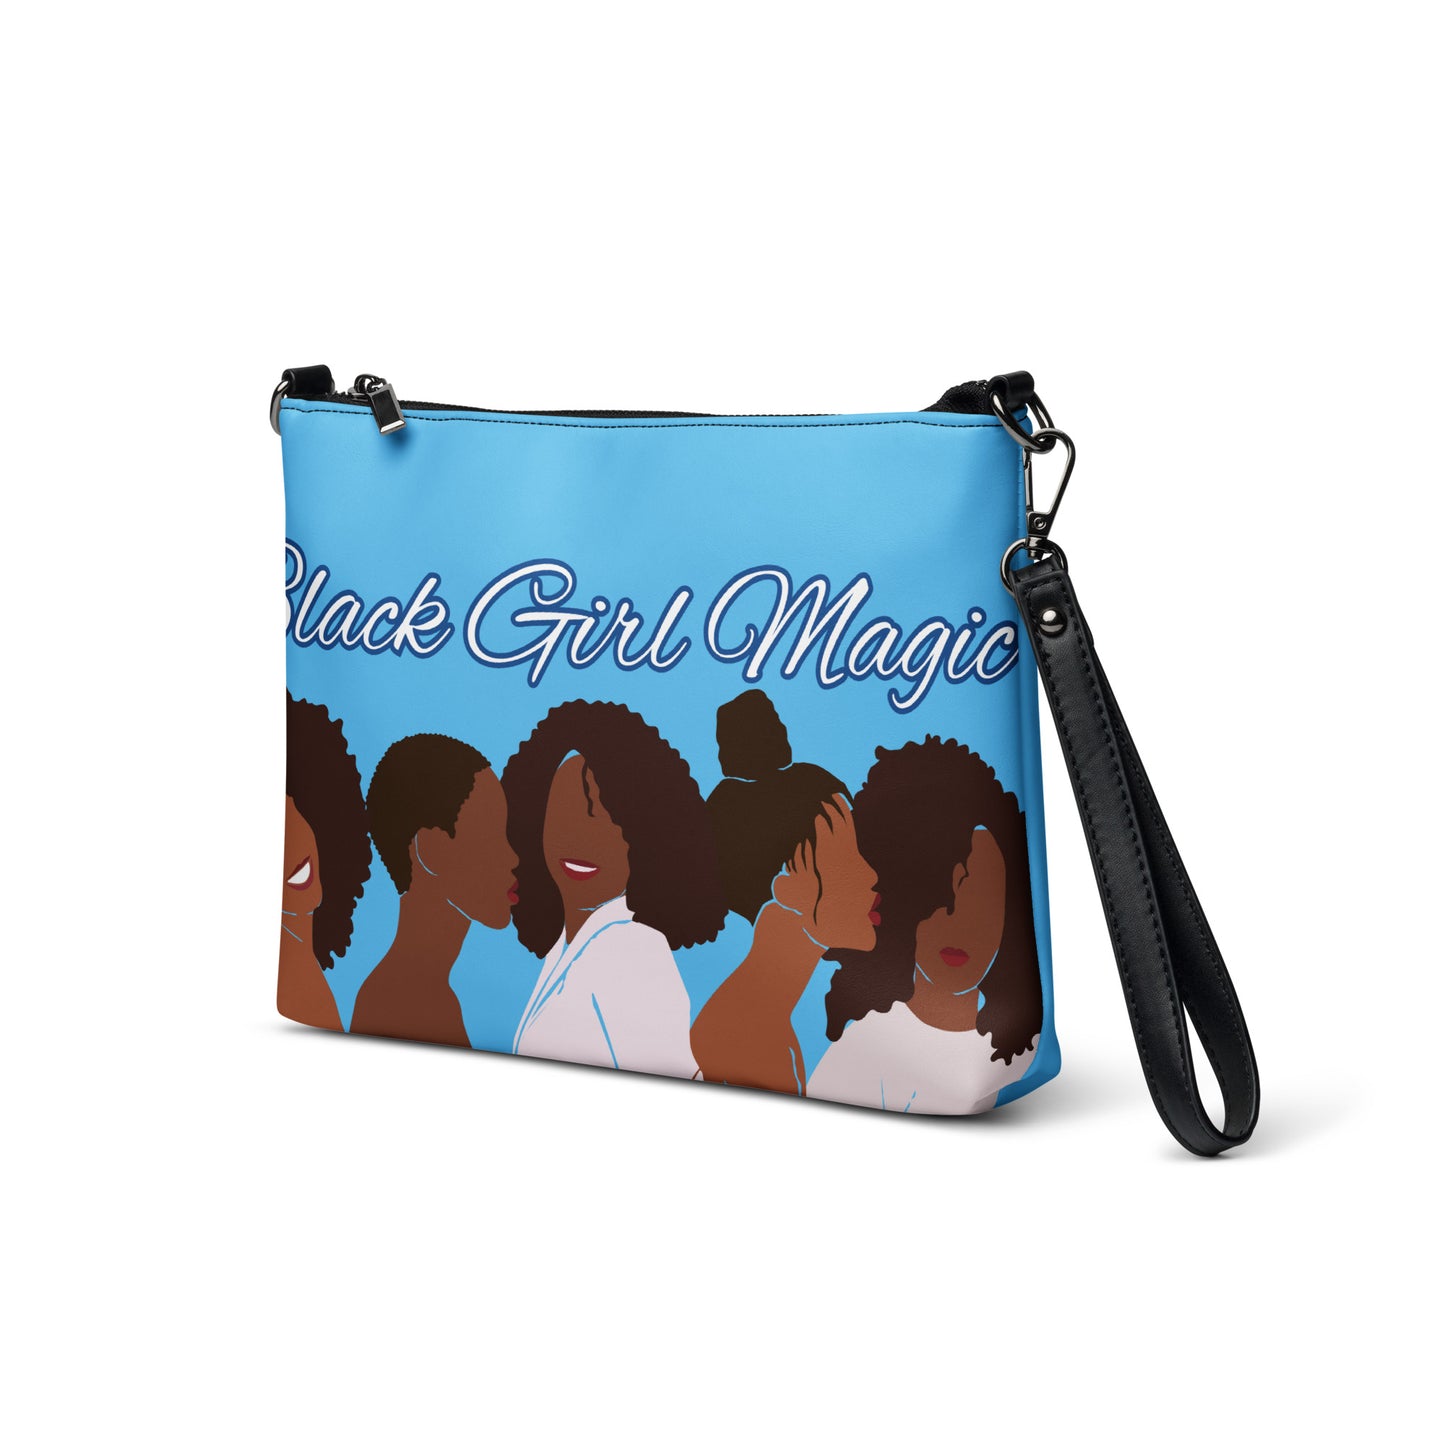 Black Girl Magic SB Crossbody bag